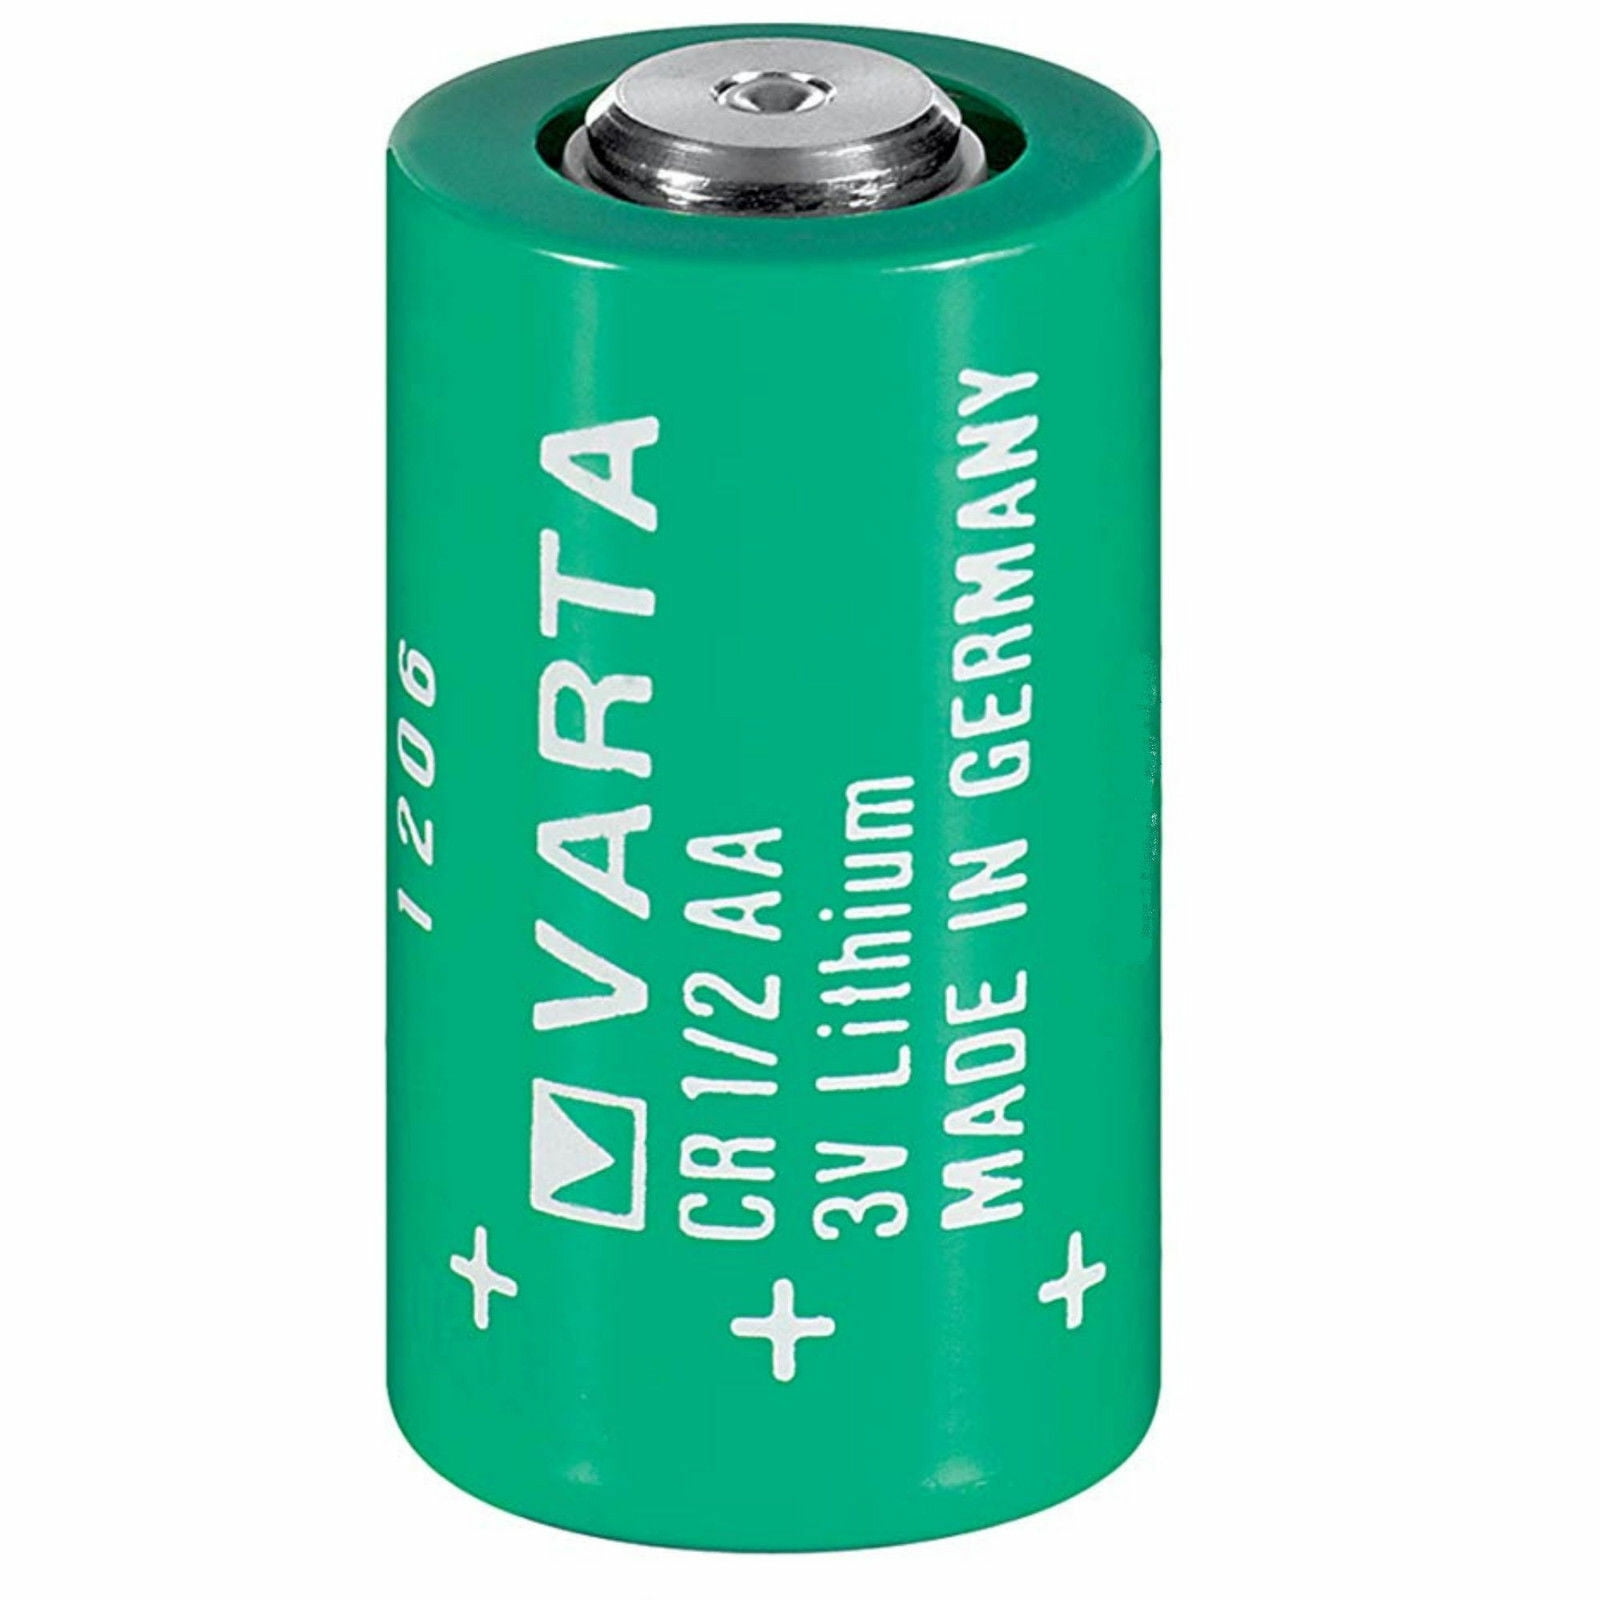 Элементы питания 3 в. Батарейка литиевая Varta CR 1/2 AA 3v. Батарейку литиевую cr1/2aa Varta. Varta cr1/2 AA. Элемент питания Varta CR 1/2aa 3в.